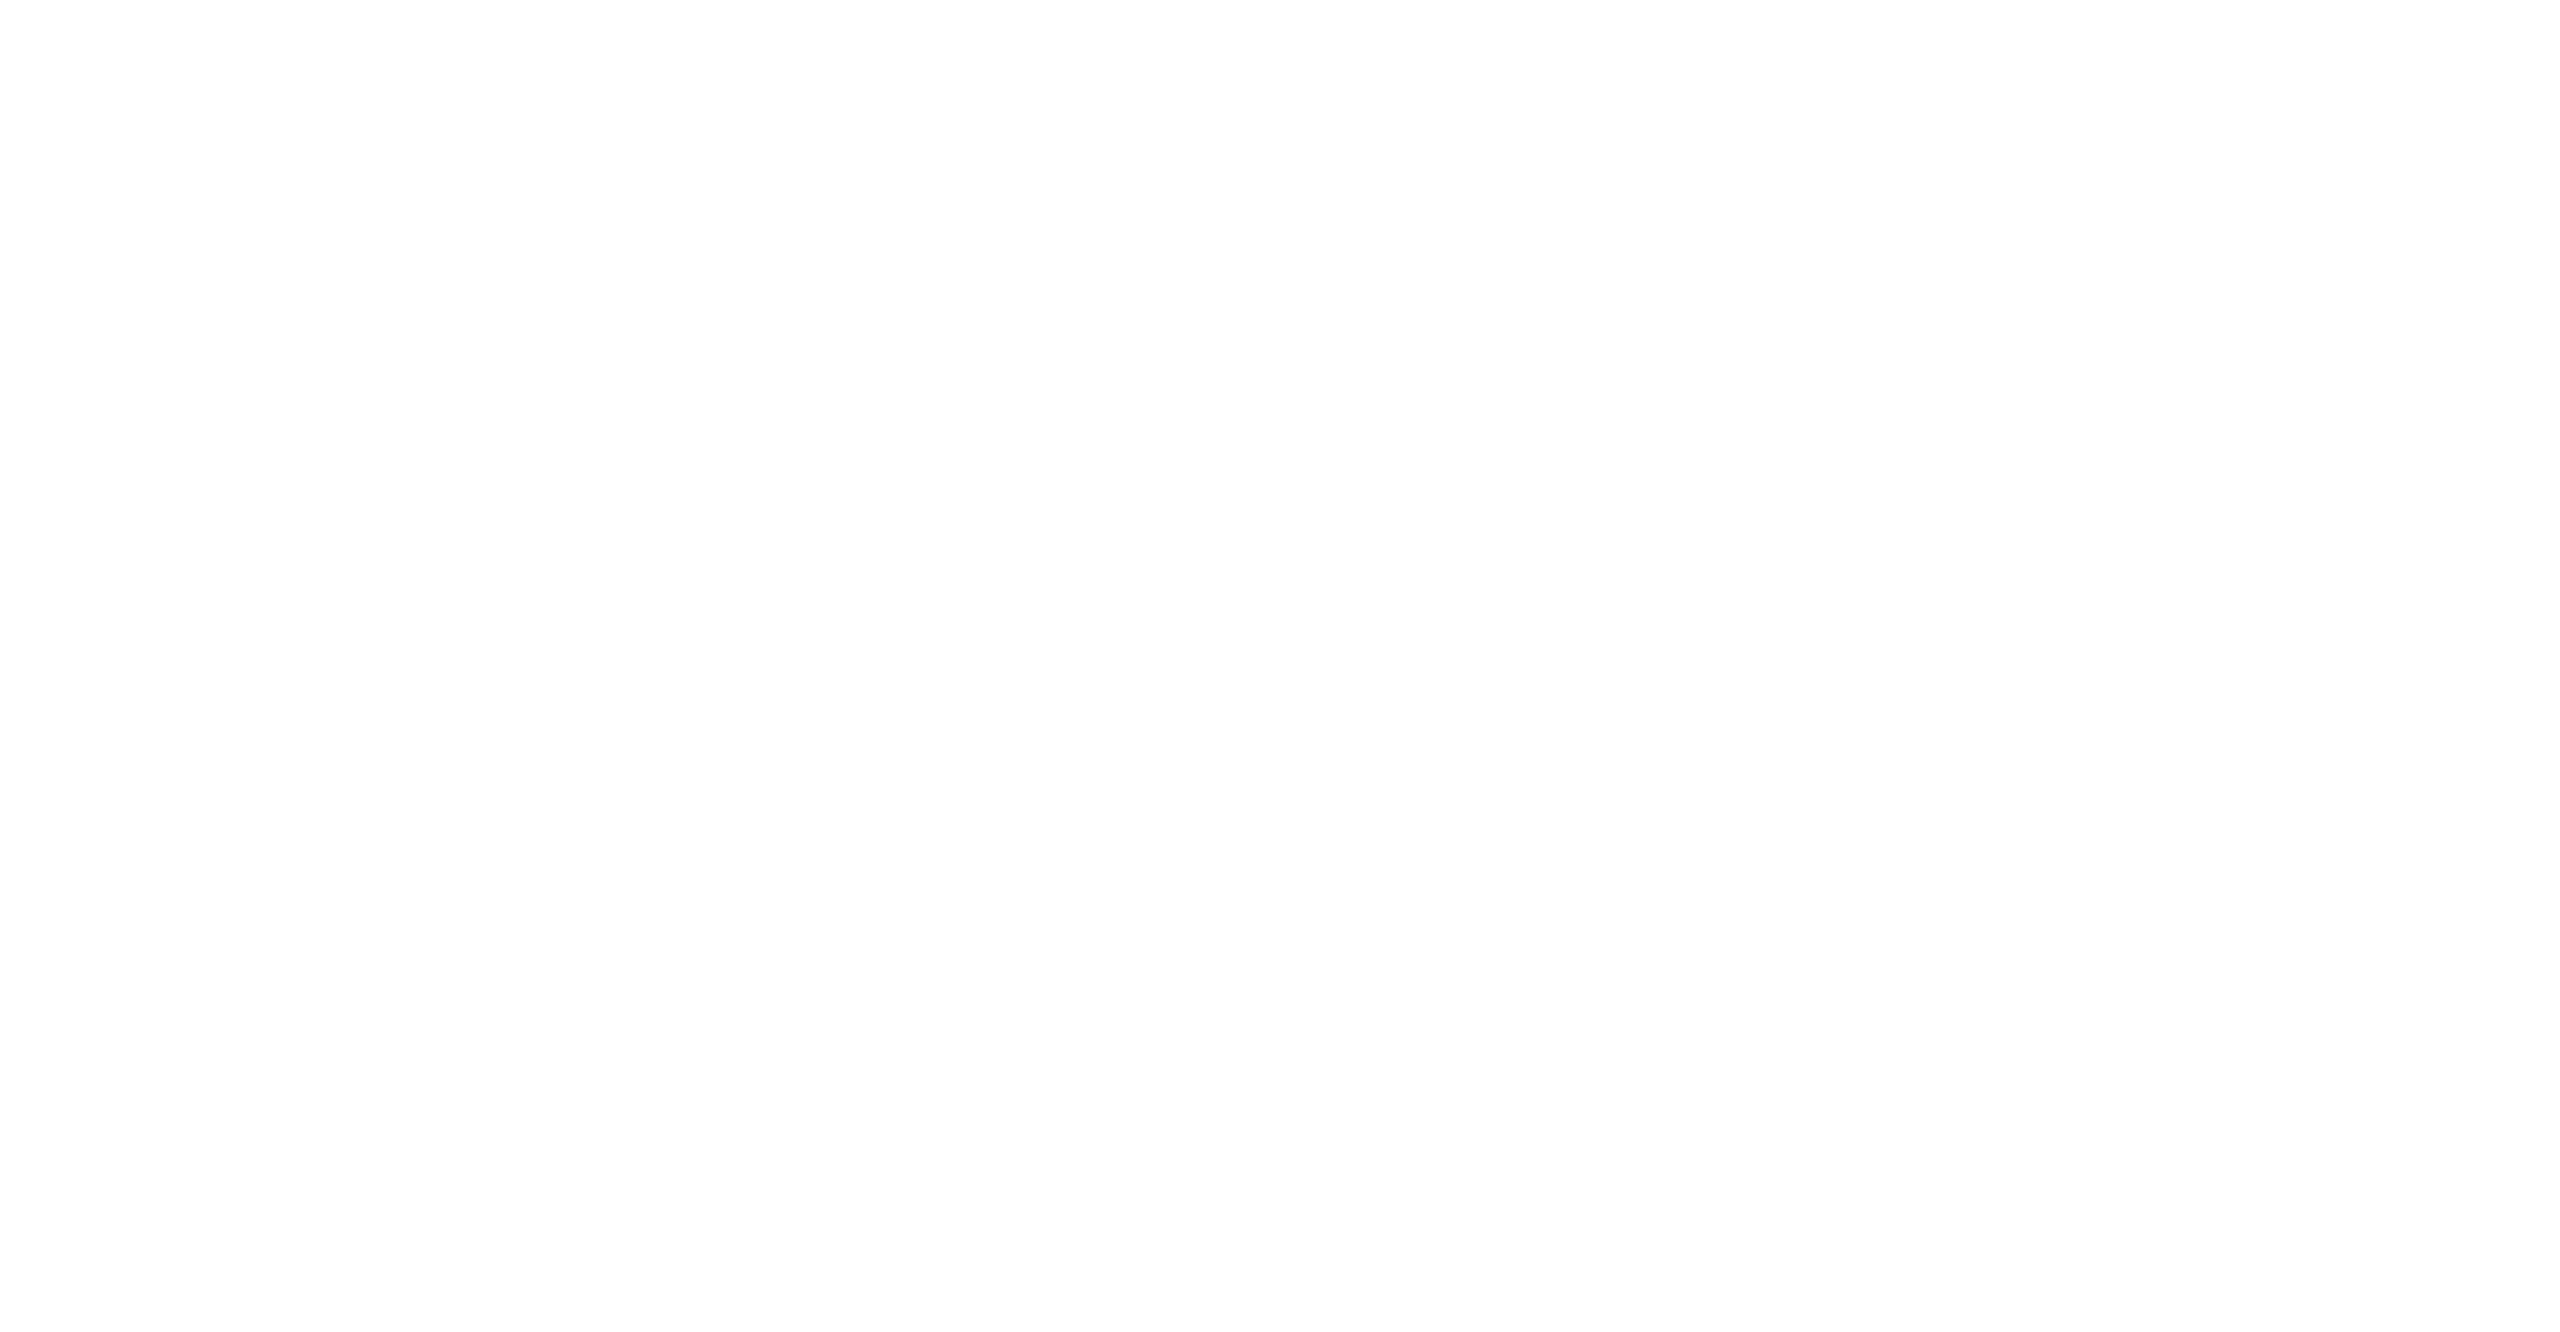 Logo for Lloyd’s Register